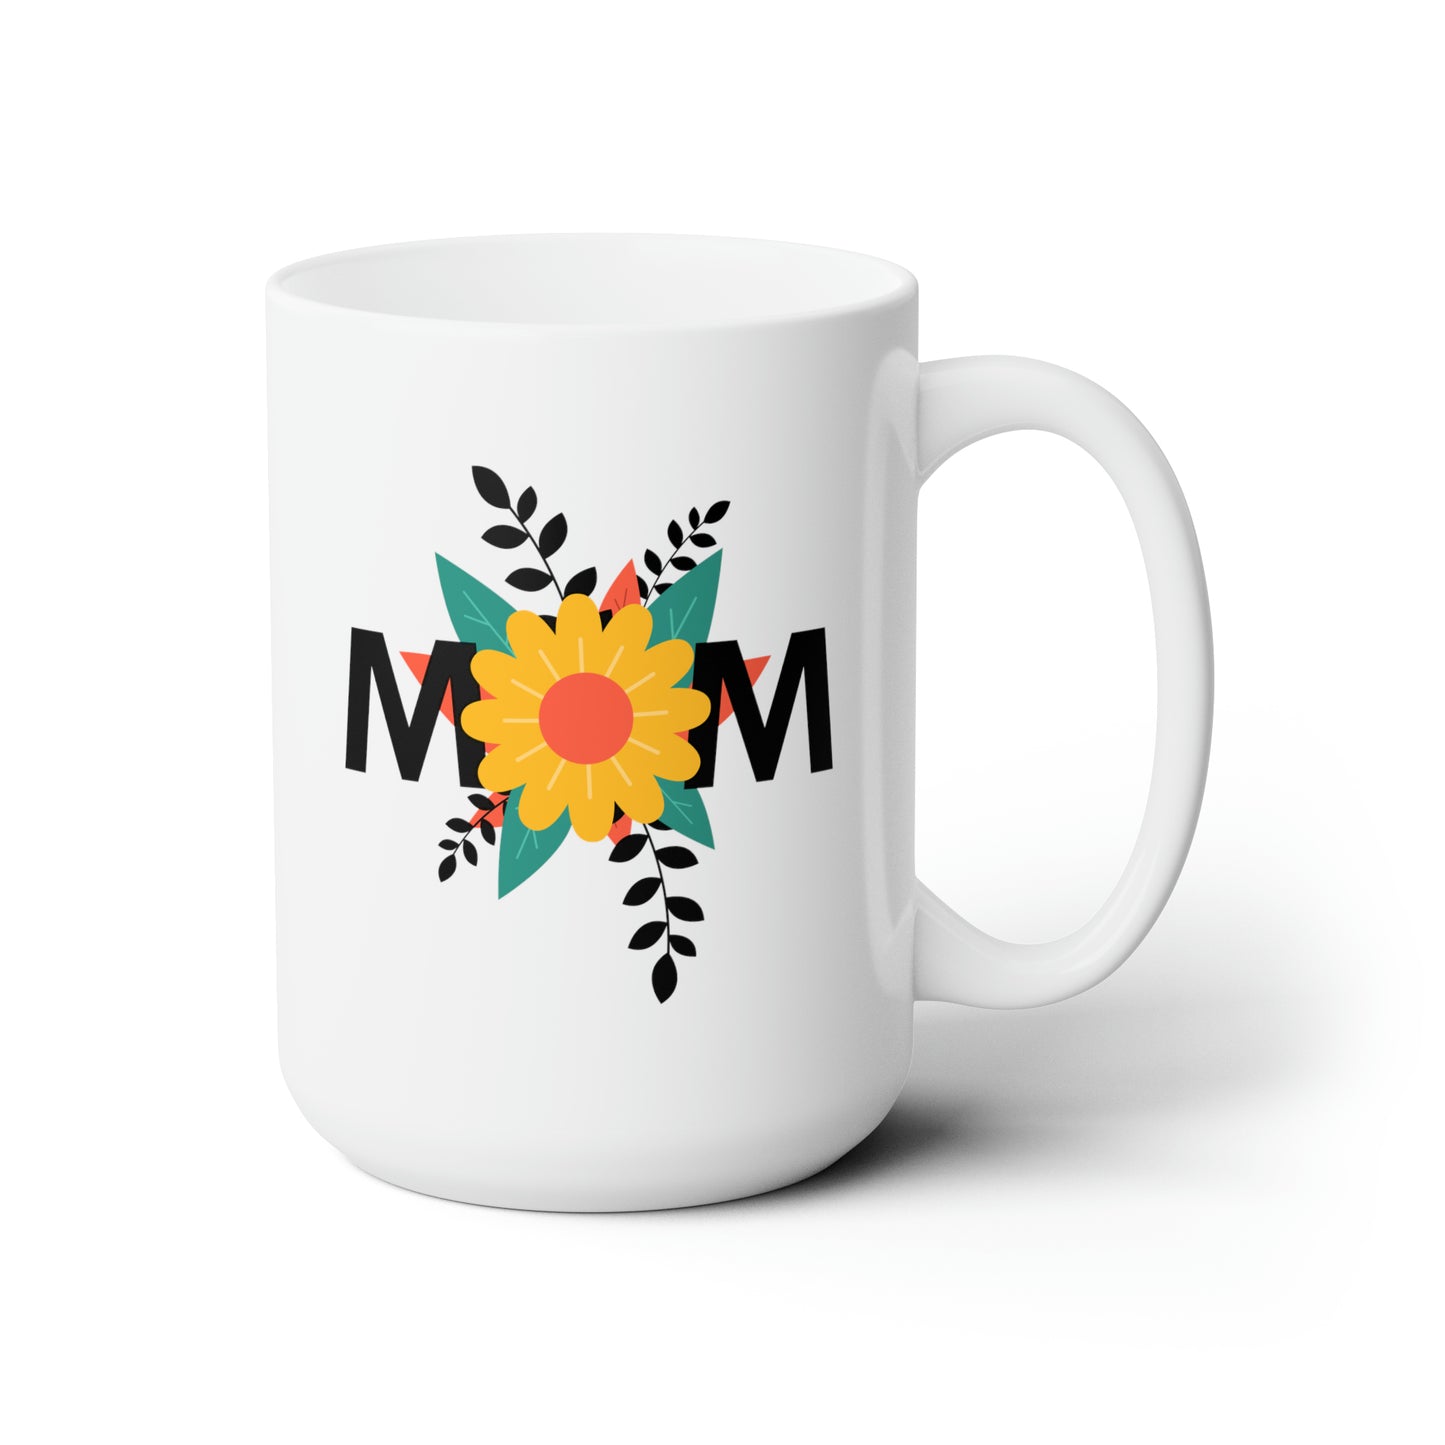 Ceramic Mug With "Mom" Grahpic Design, 15oz